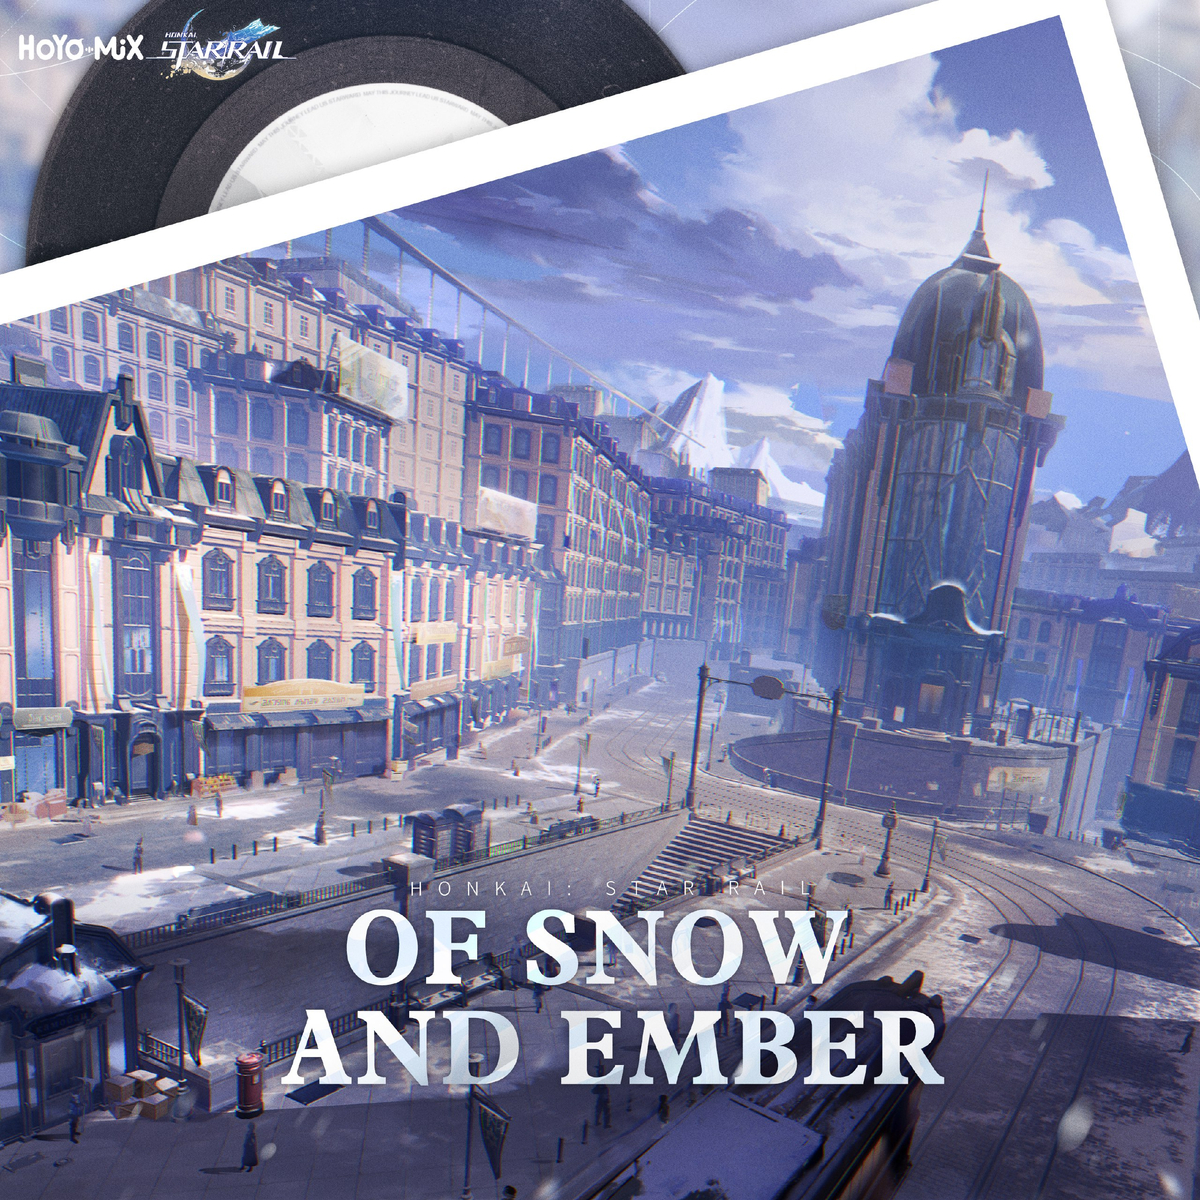 Второй альбом саудтрека Honkai: Star Rail, Of Snow and Ember, стал доступен для прослушивания